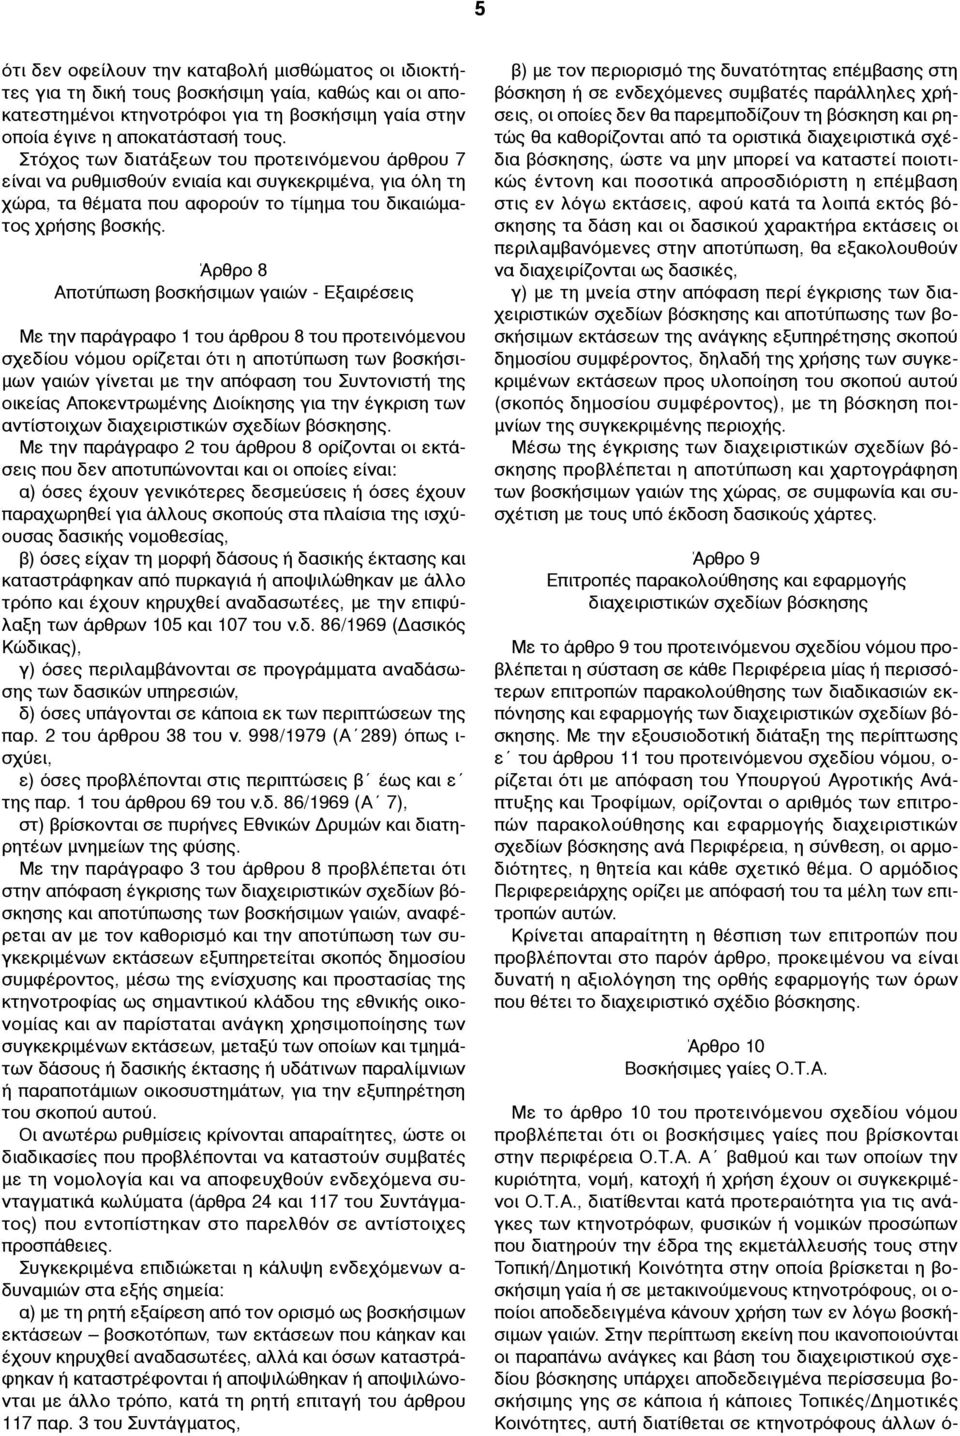 Άρθρο 8 Αποτύπωση βοσκήσιµων γαιών - Εξαιρέσεις Με την παράγραφο 1 του άρθρου 8 του προτεινόµενου σχεδίου νόµου ορίζεται ότι η αποτύπωση των βοσκήσι- µων γαιών γίνεται µε την απόφαση του Συντονιστή